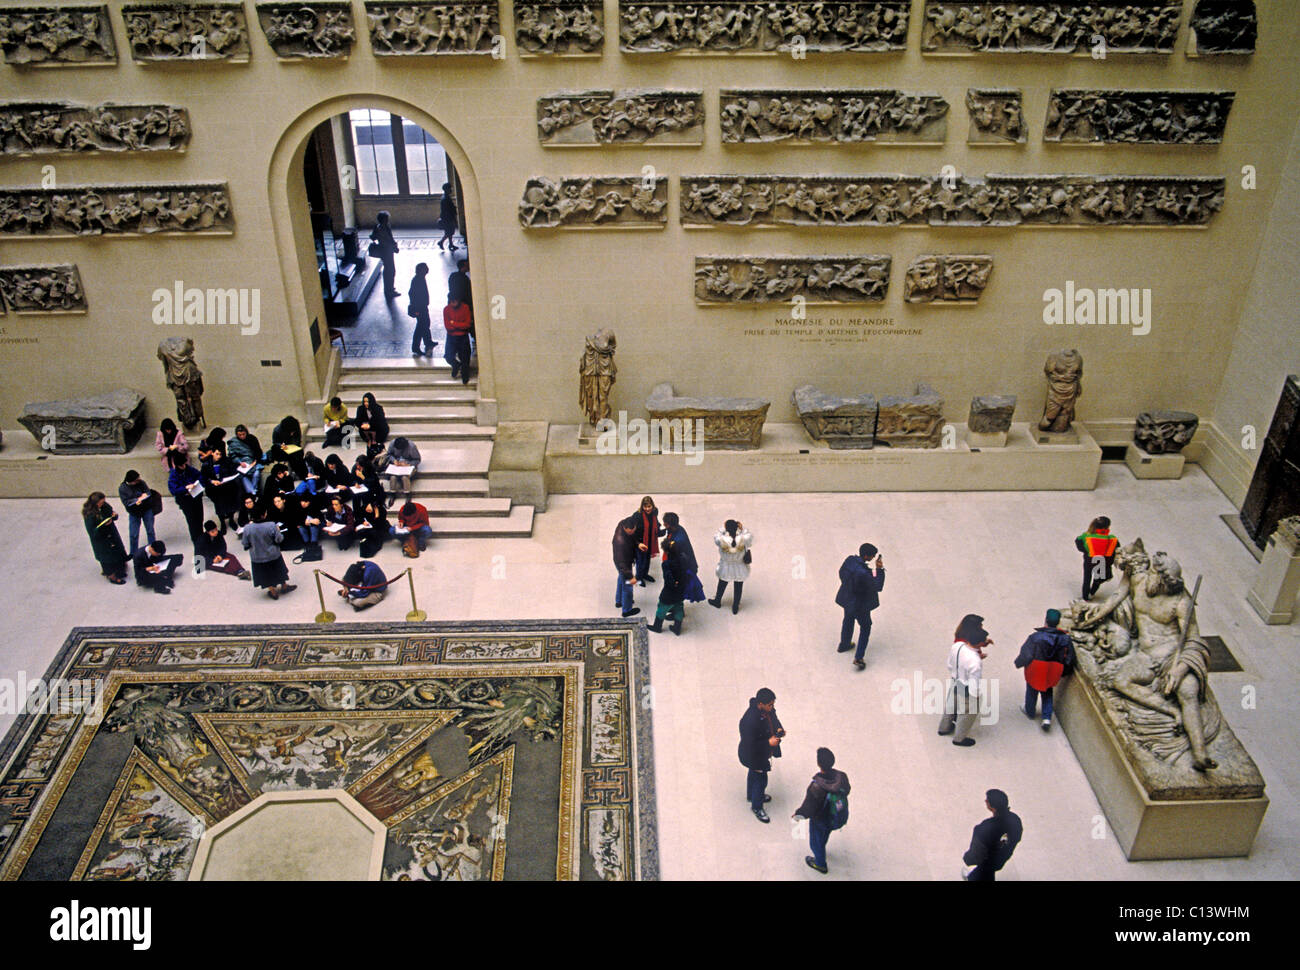 Menschen, Studenten auf Exkursion, griechische Antiquitäten bei Denon Galerie, Louvre Museum, Kunstmuseum, Museum, Paris, Ile-de-France, Frankreich Stockfoto